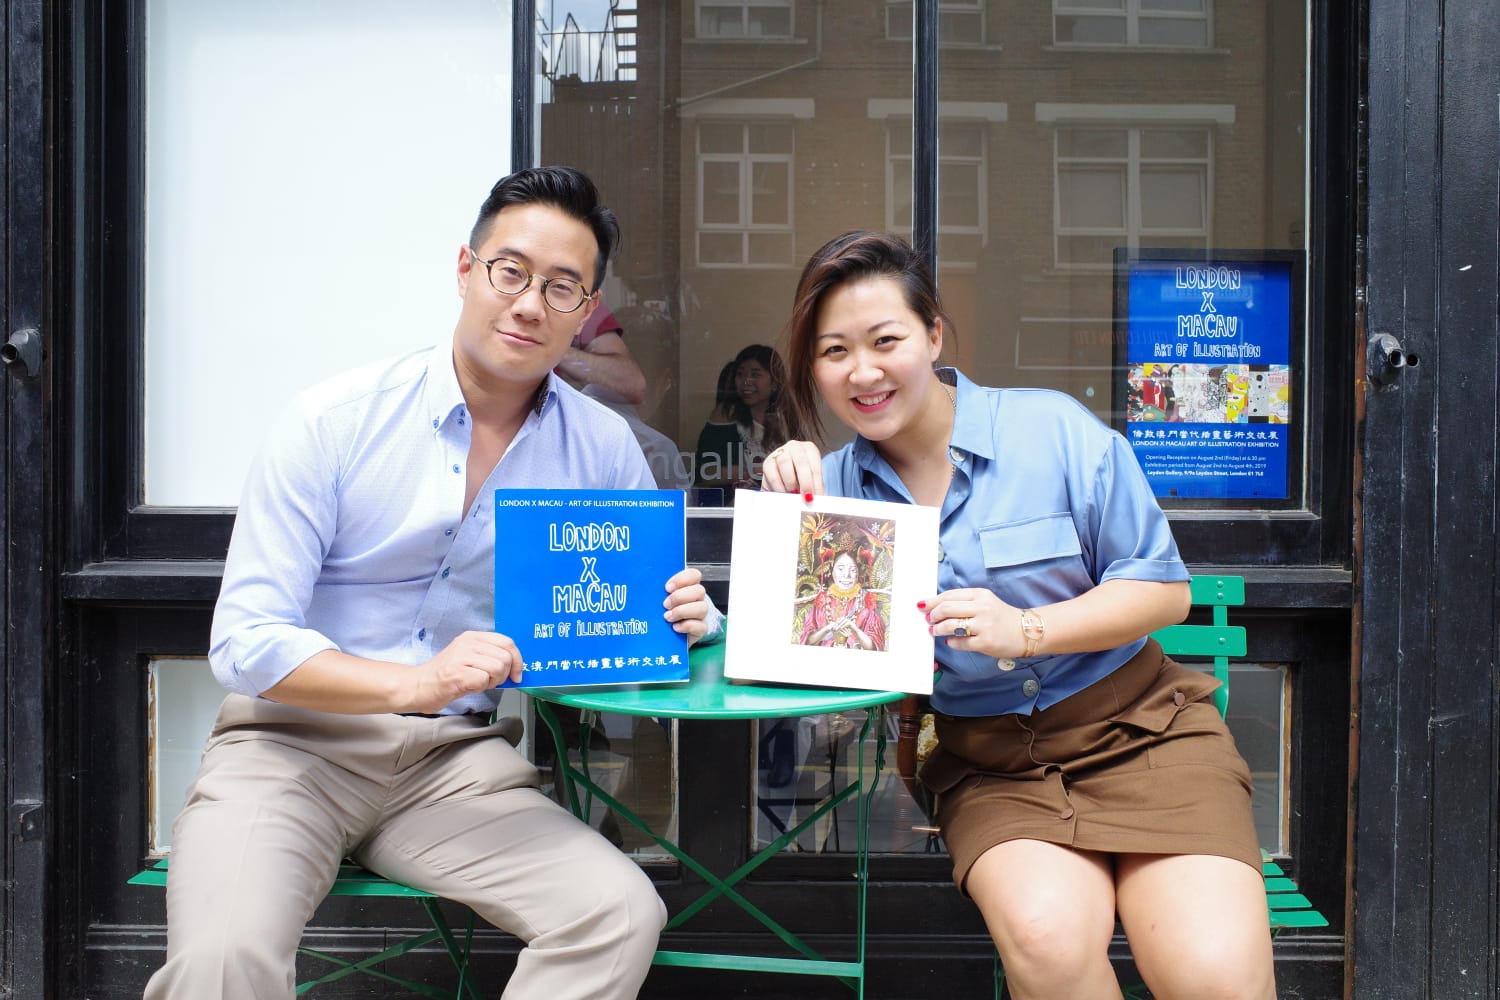 Exposição | Depois de Londres, iniciativa da associação YunYi regressa a Macau